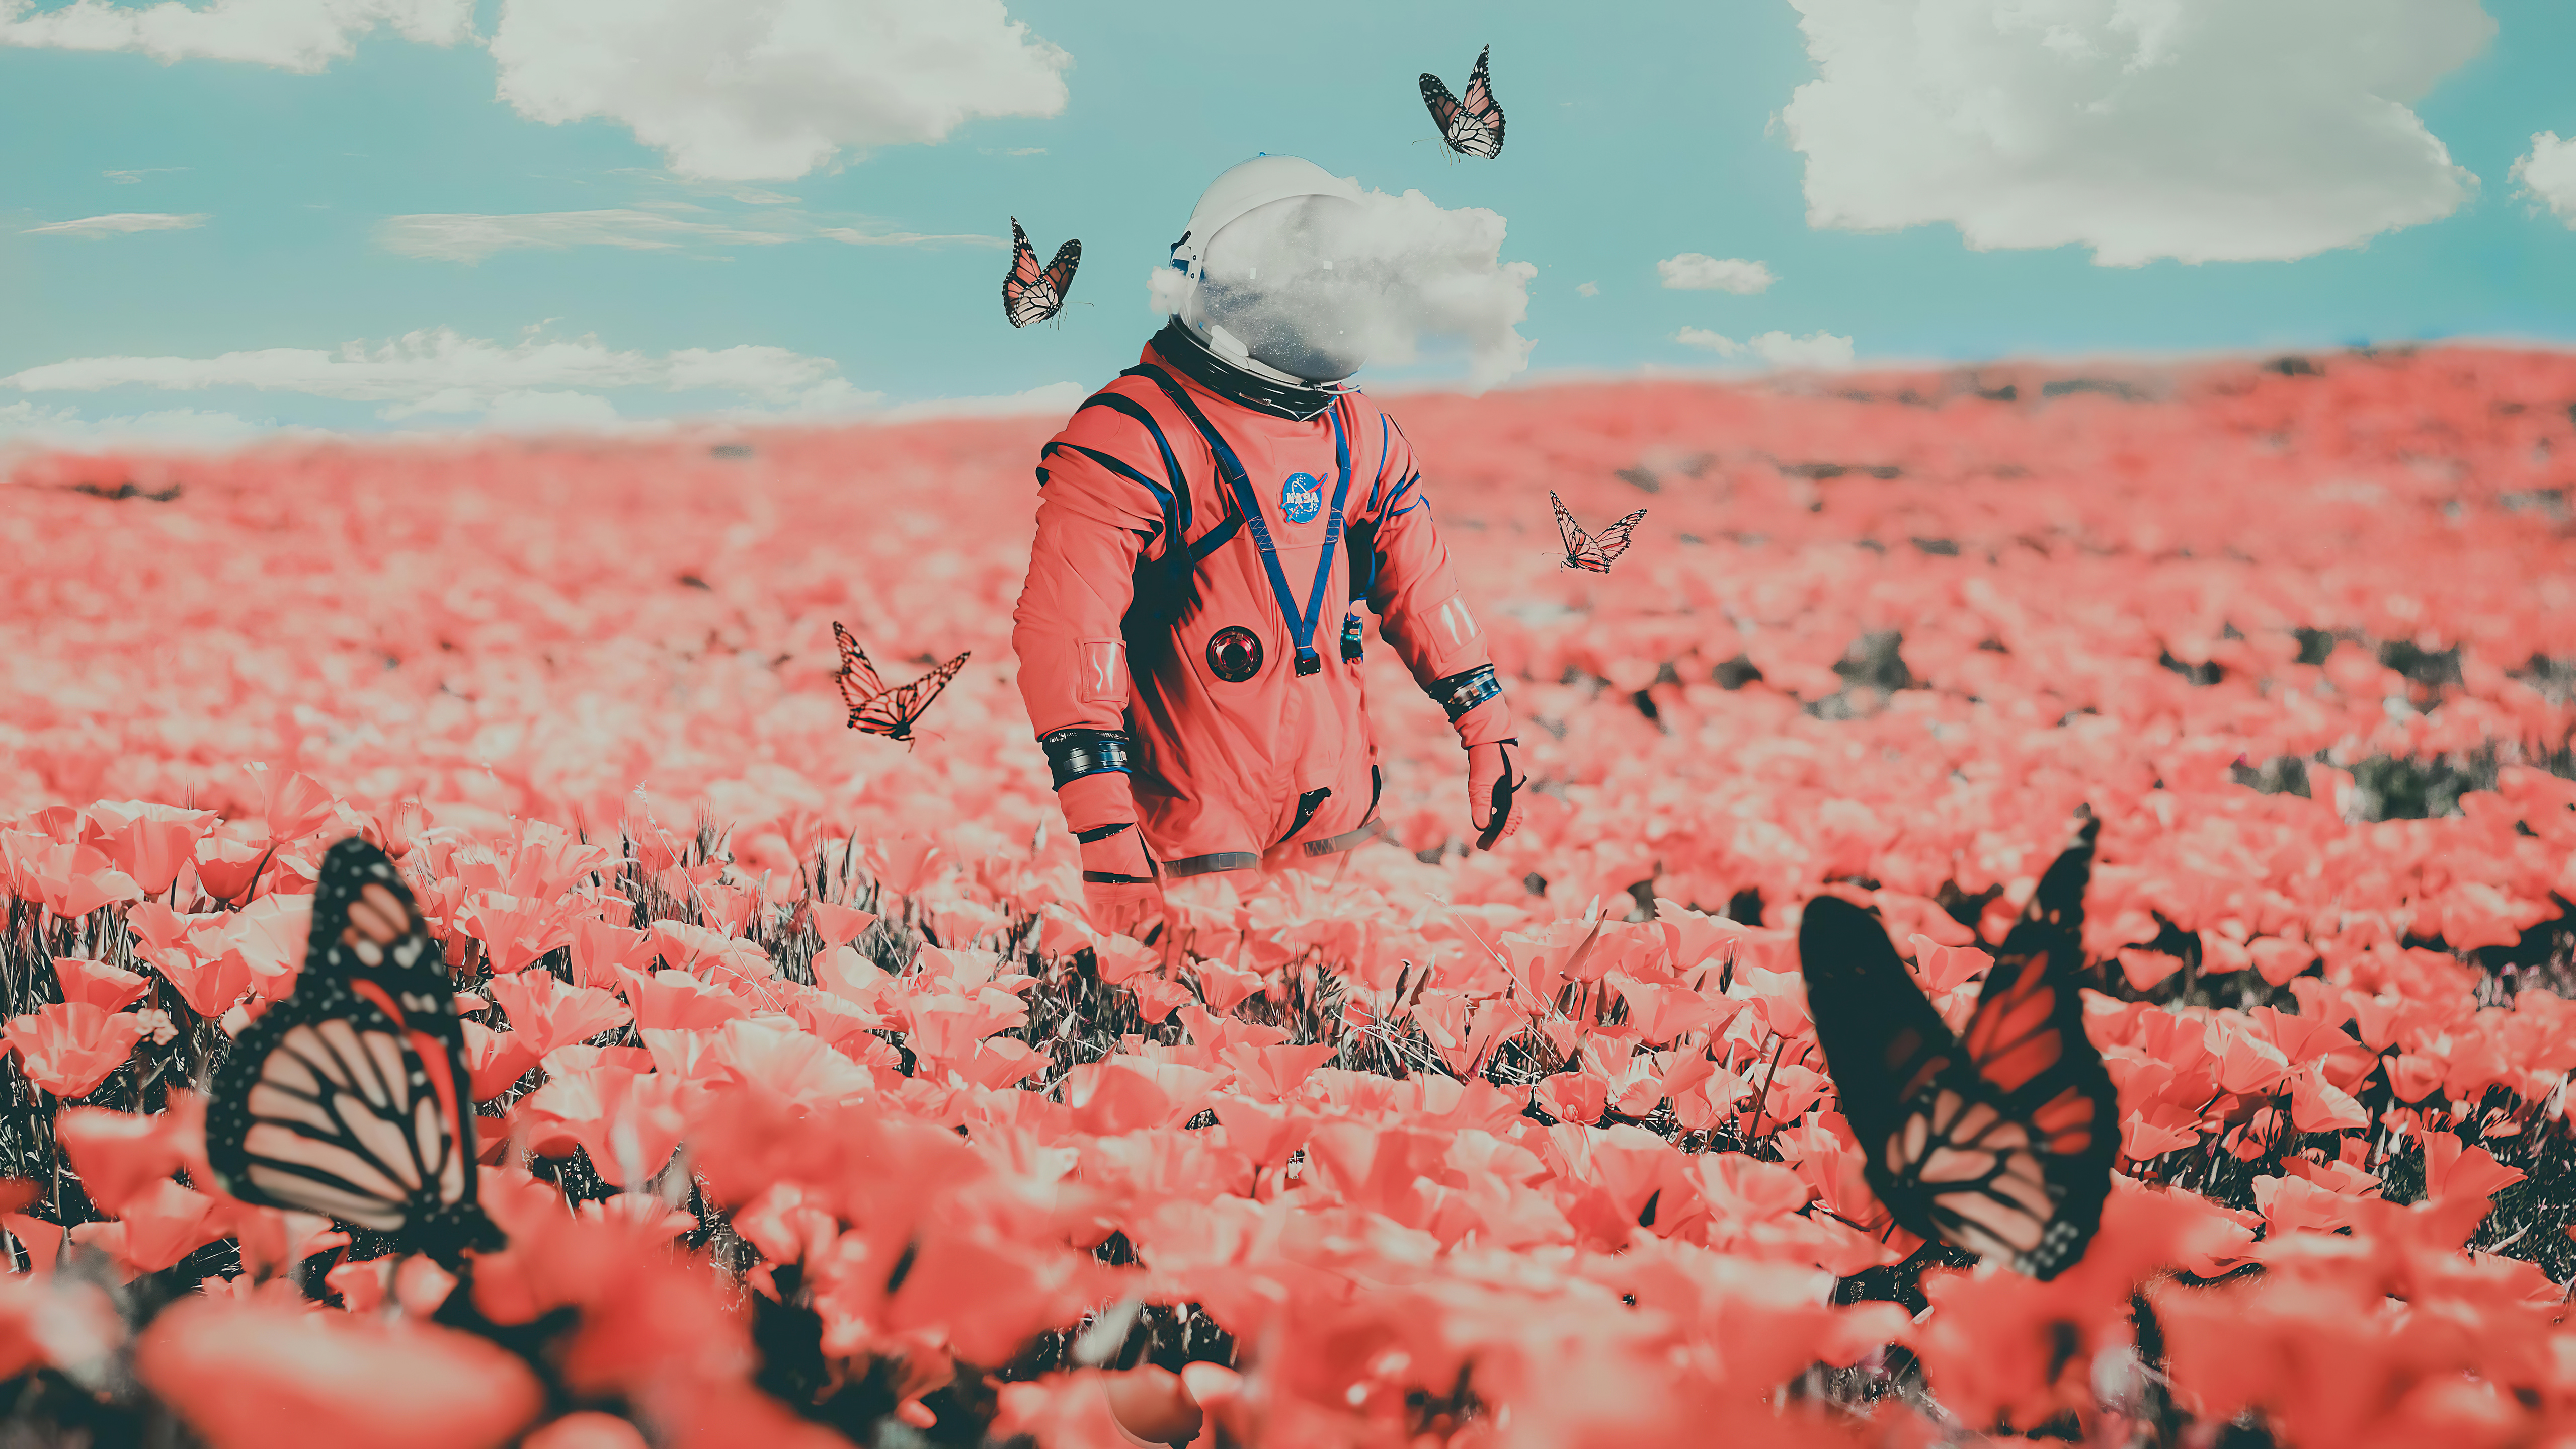 Zastaki.com - Космонавт идет по полю с бабочками и красными маками